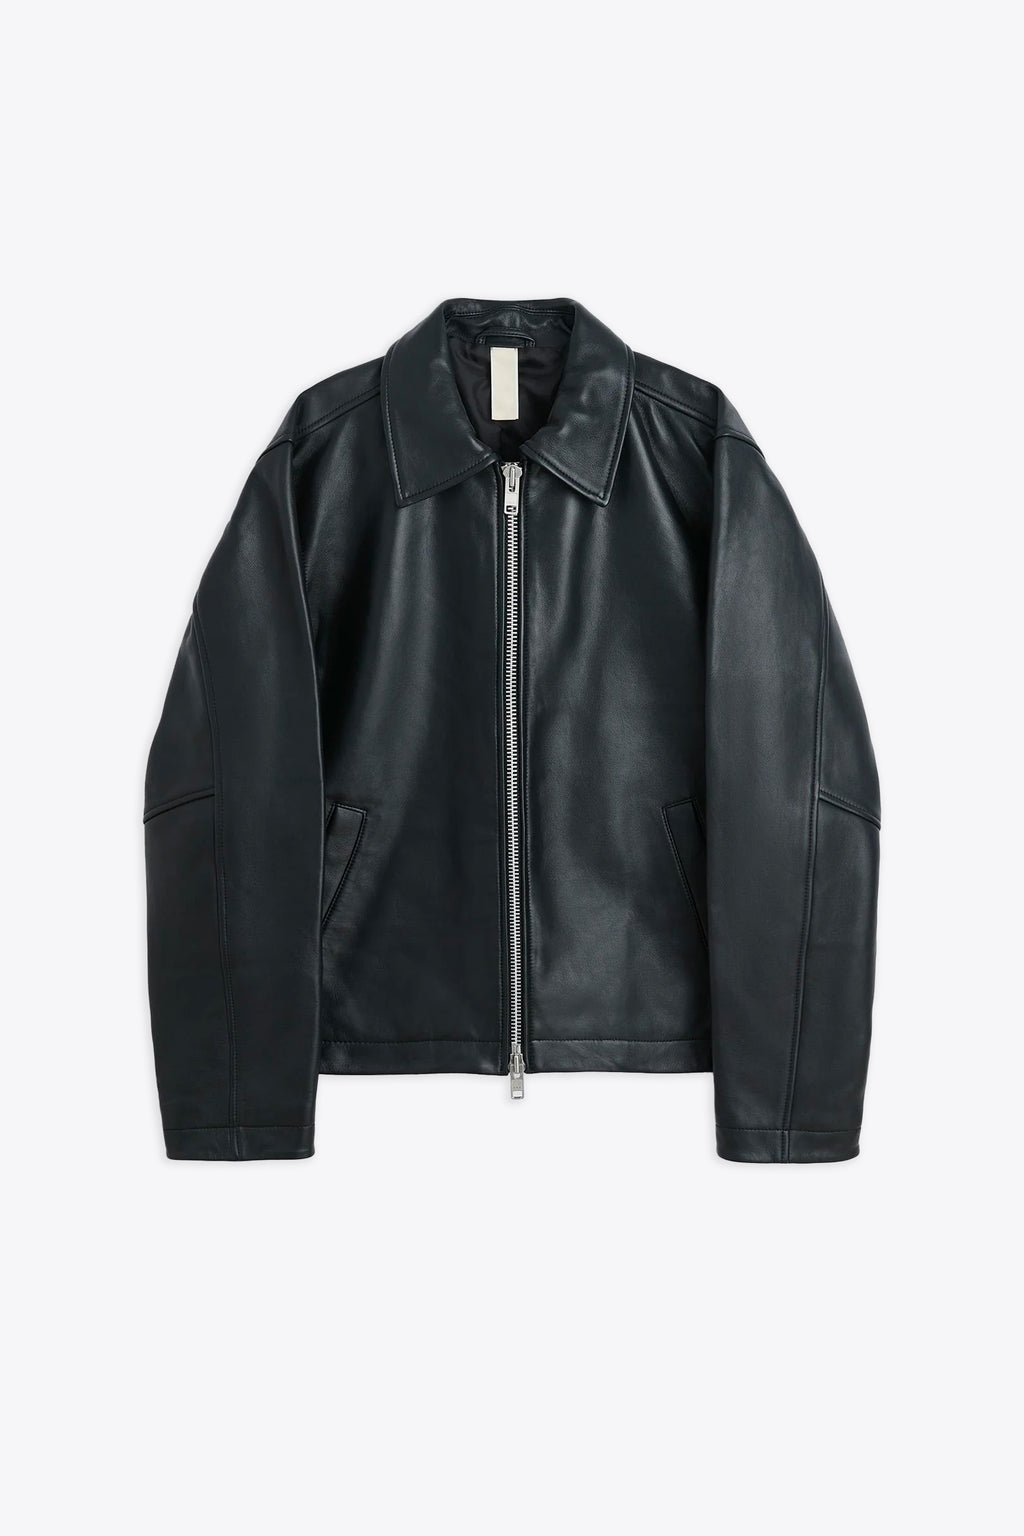 alt-image__Black-leather-biker-jacket---Short-Leather-Jacket